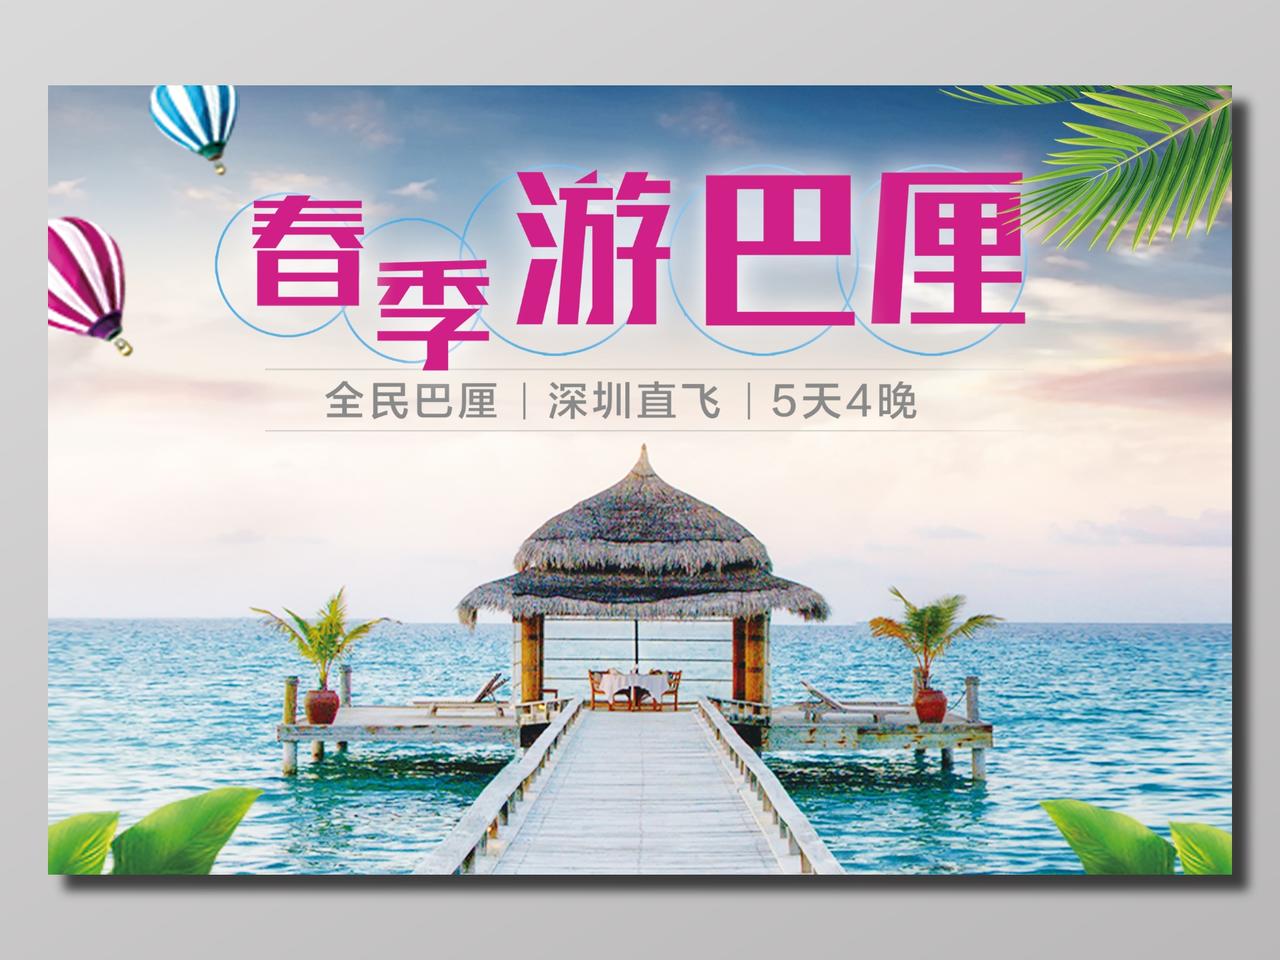 春季游巴厘岛旅游淡蓝色清新简约宣传海报